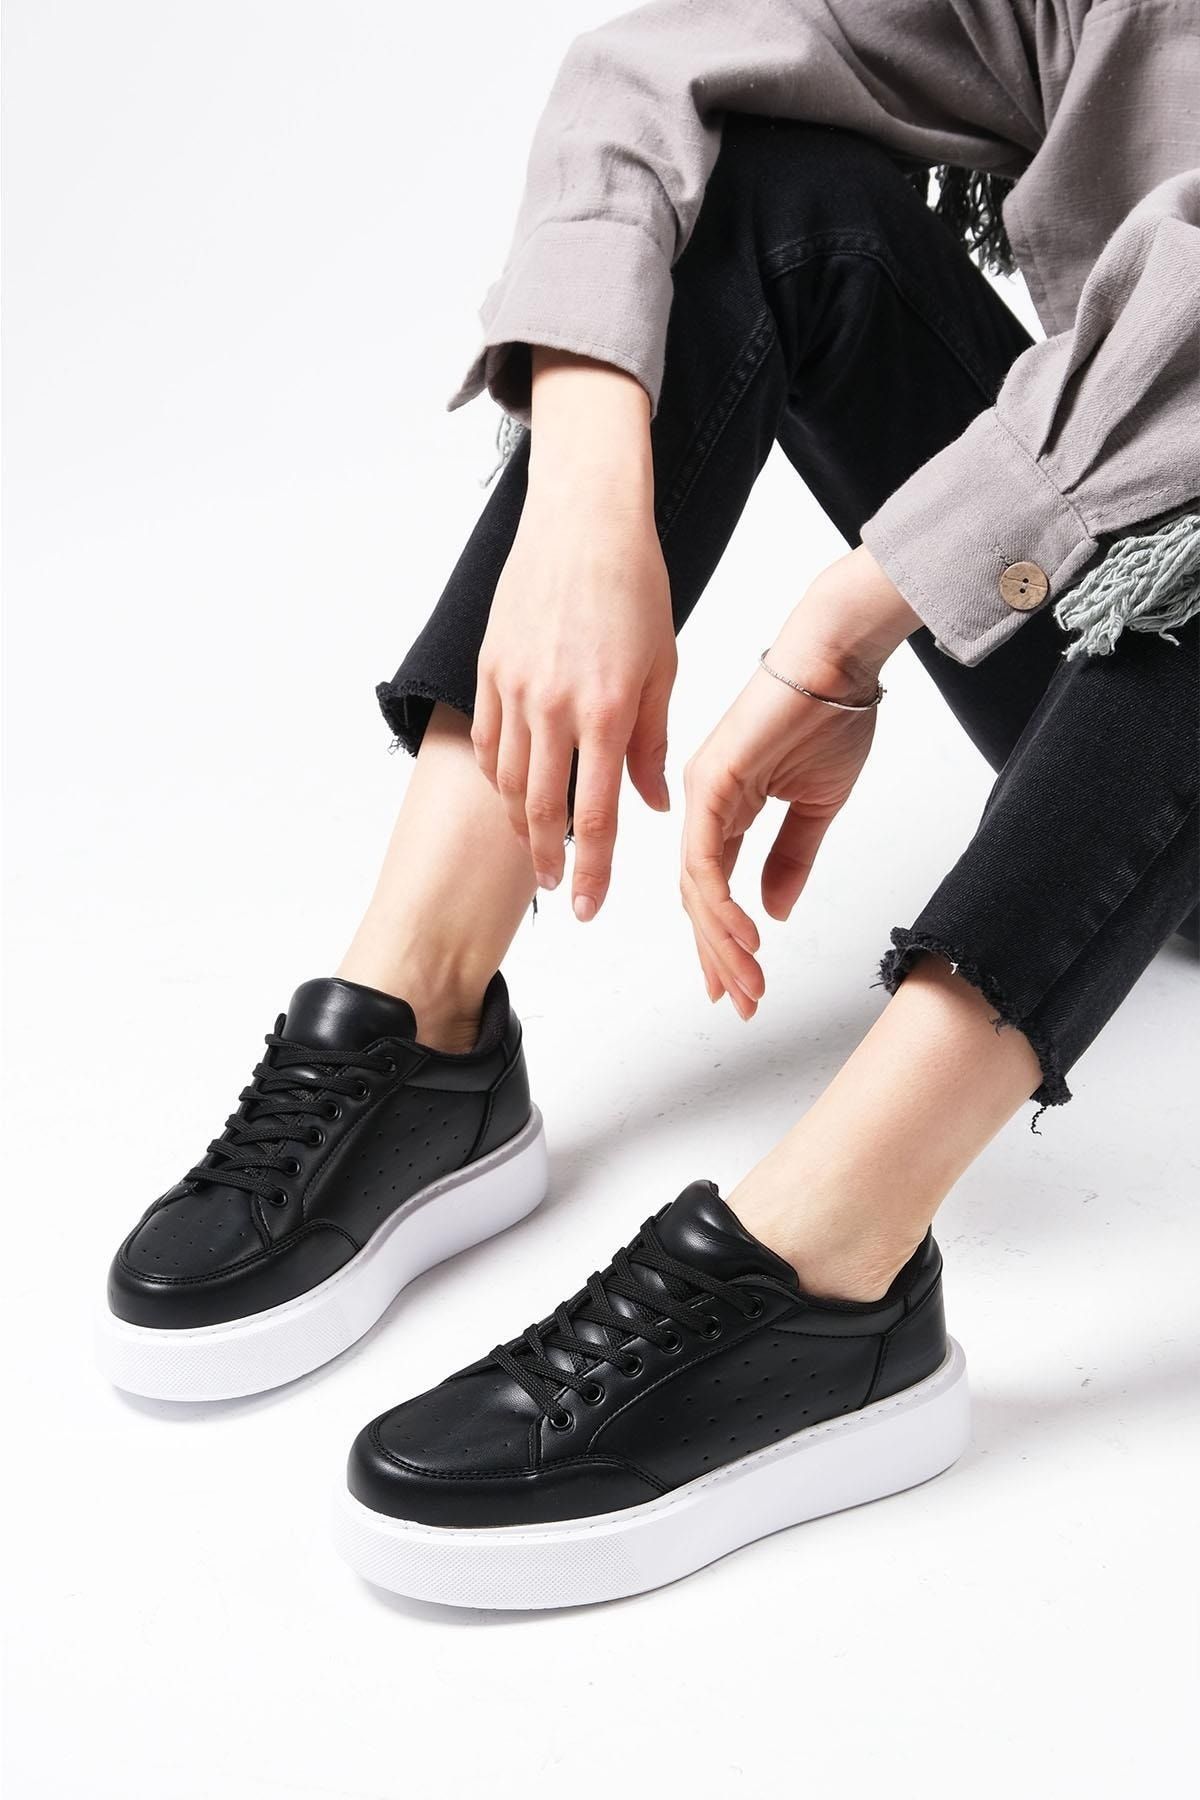 Mio Gusto Paula Siyah Renk Kadın Günlük Spor Ayakkabı Sneaker